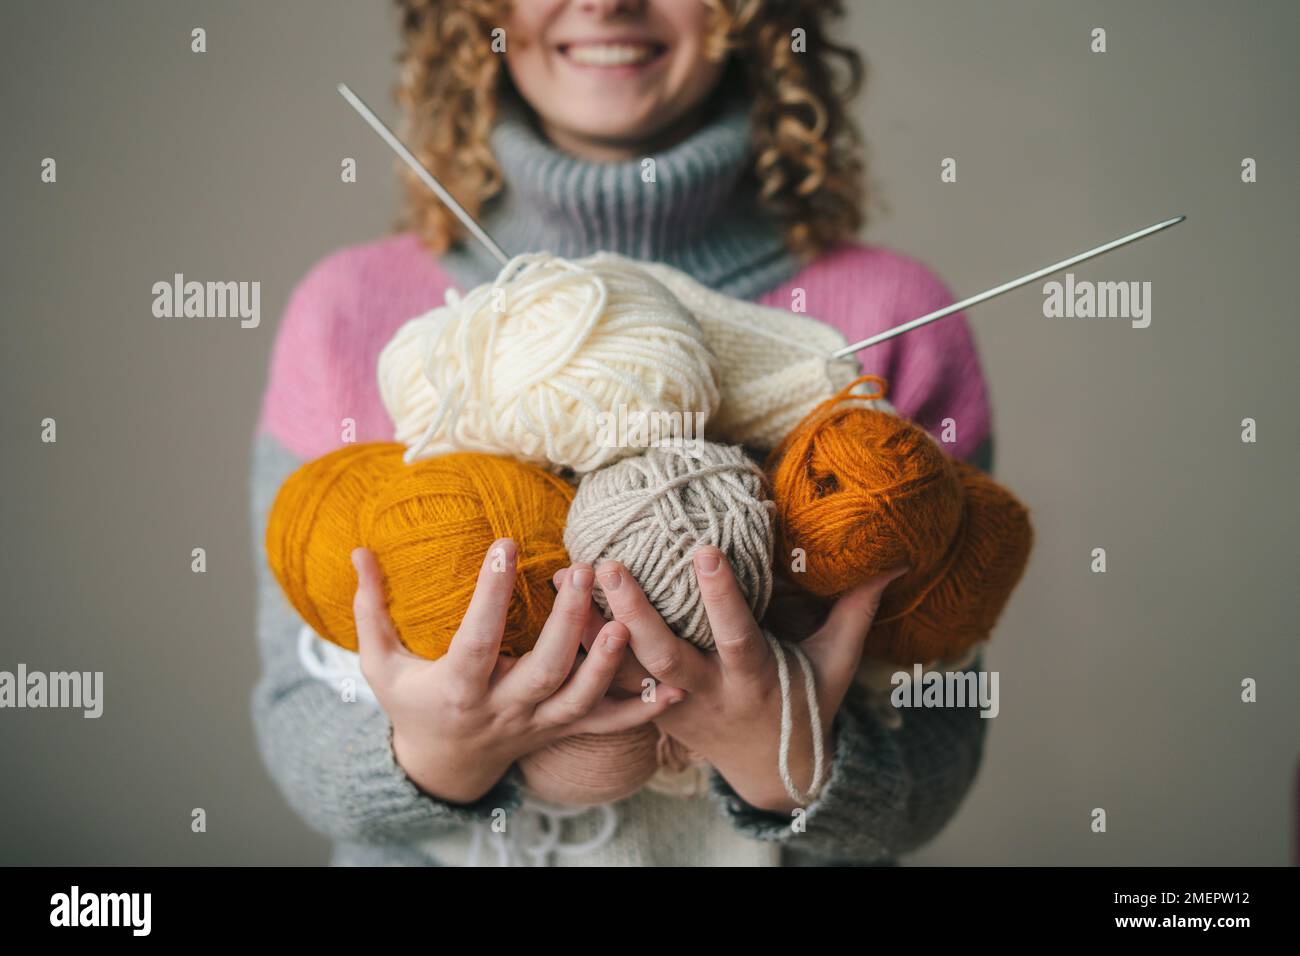 Art créatif femme mains avec balles de fil pour tricoter. Mise au point sélective. Concept créatif. Concept de mode de vie des personnes. Banque D'Images